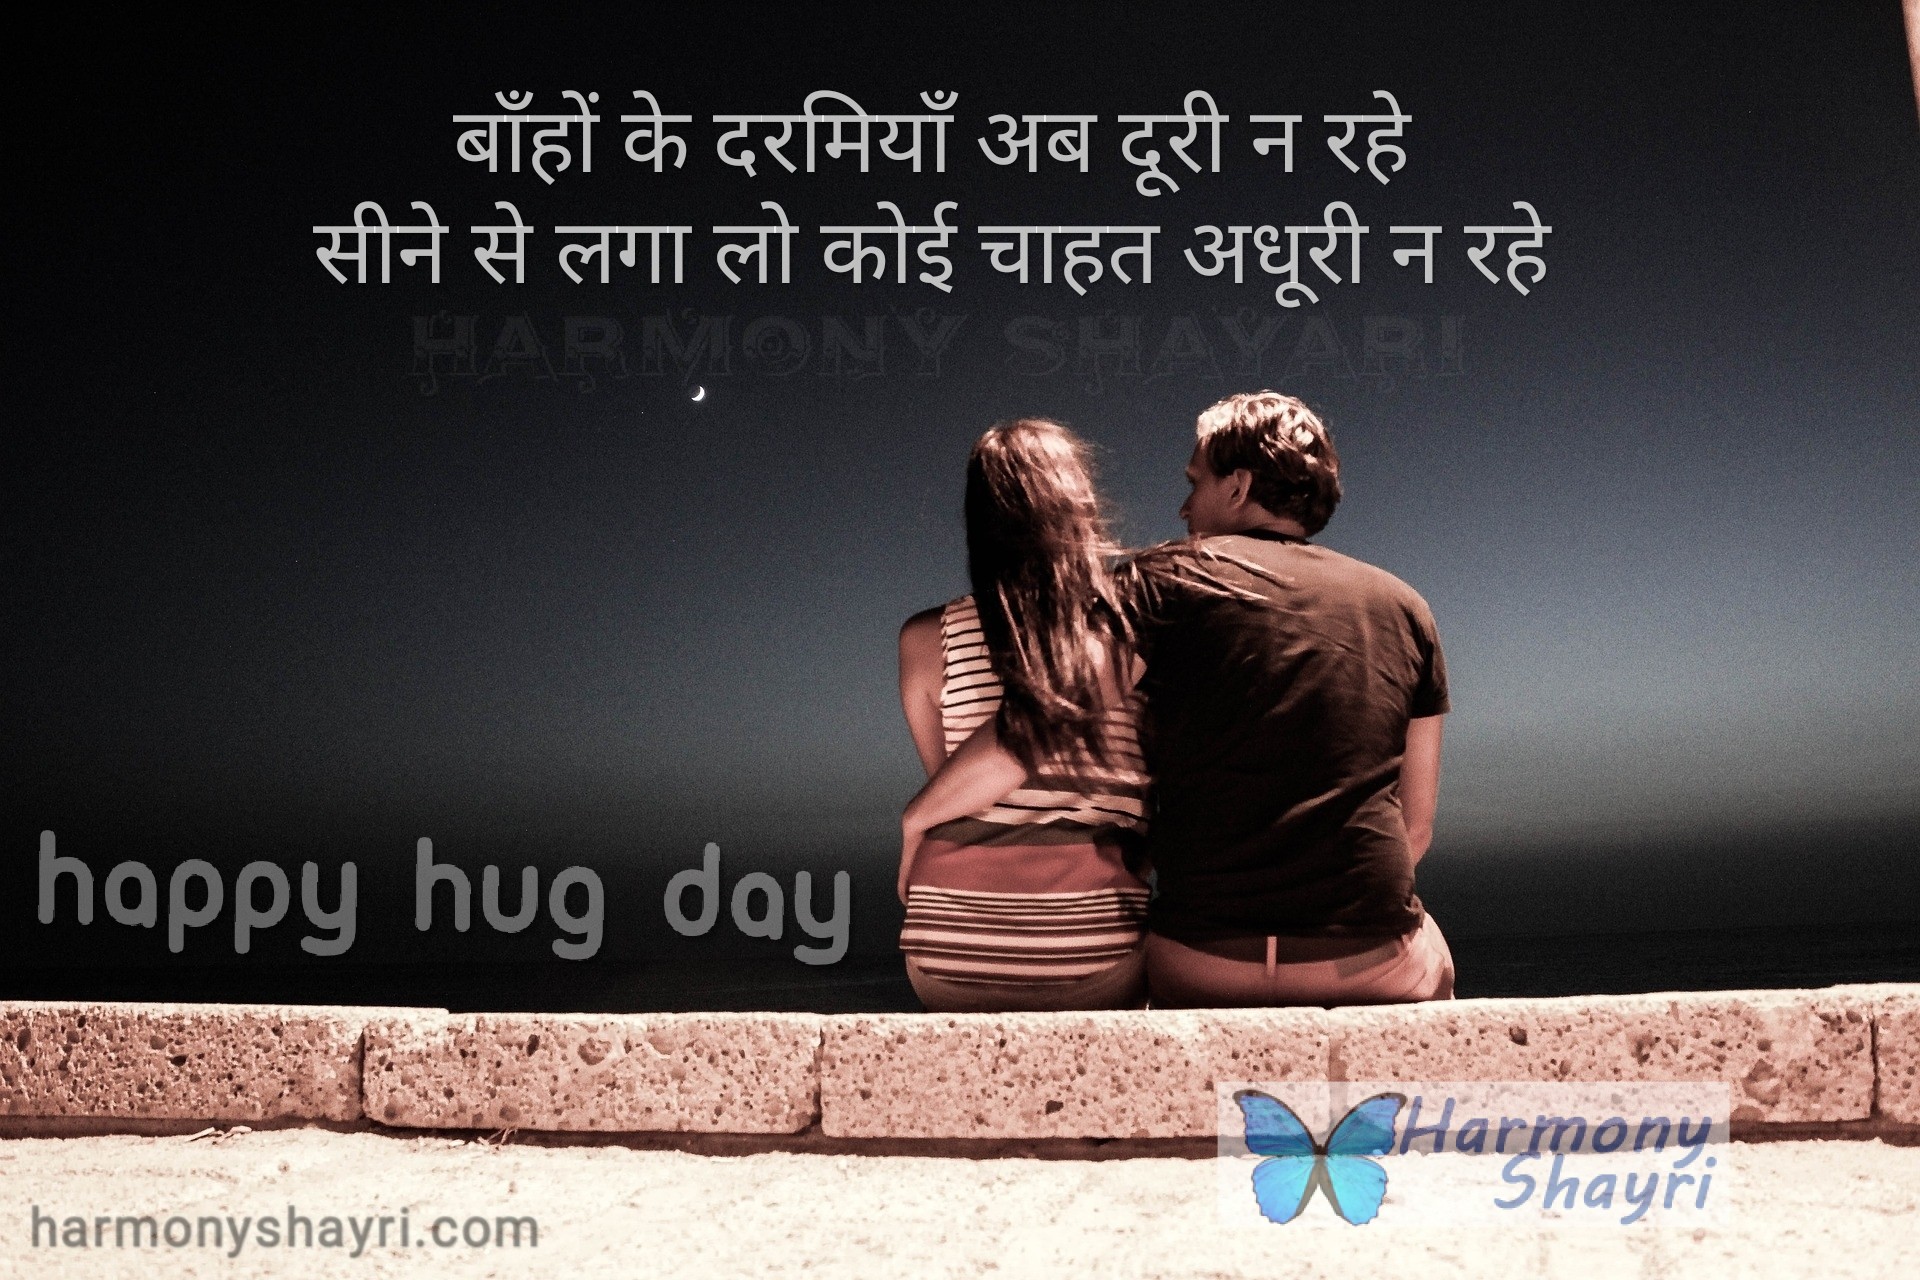 Baahon ke darmiyan ab doori na rahe – Happy Hug Day